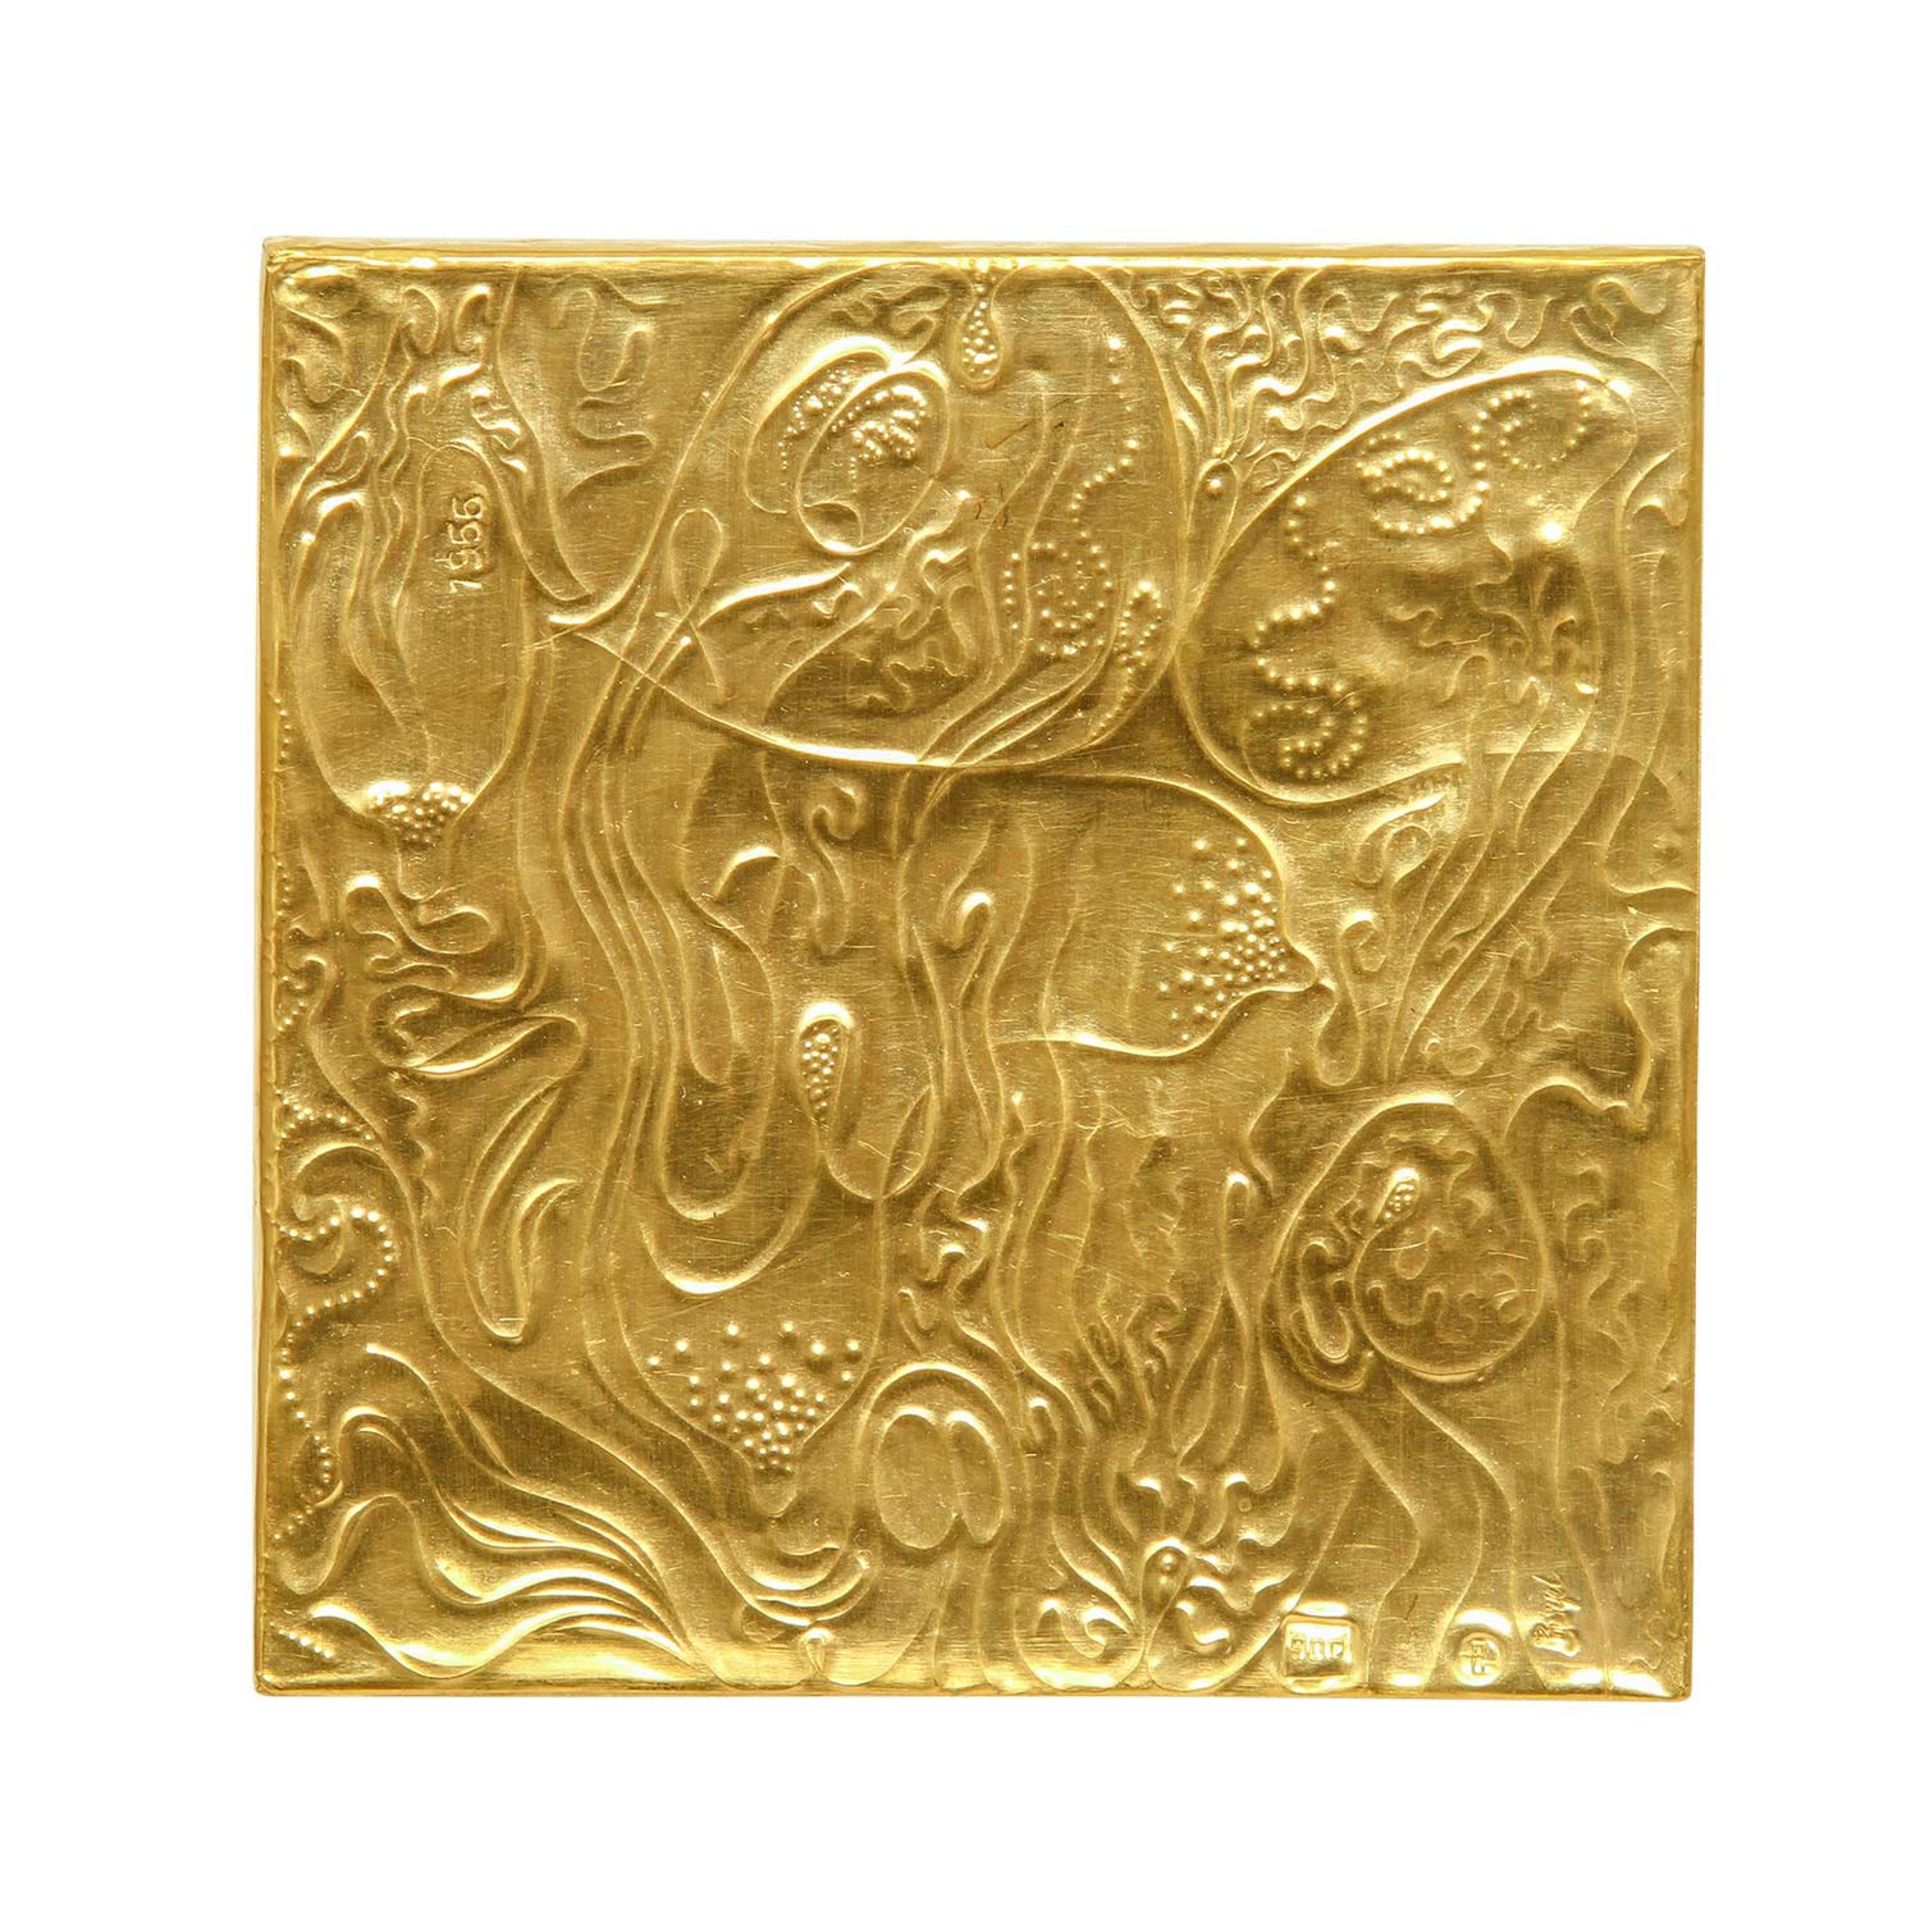 Goldminiatur "Semé" (1966) von E. BURGEL,Gold 900, gerieben + ziseliert, quadratisch, auf Acryl - Bild 2 aus 6